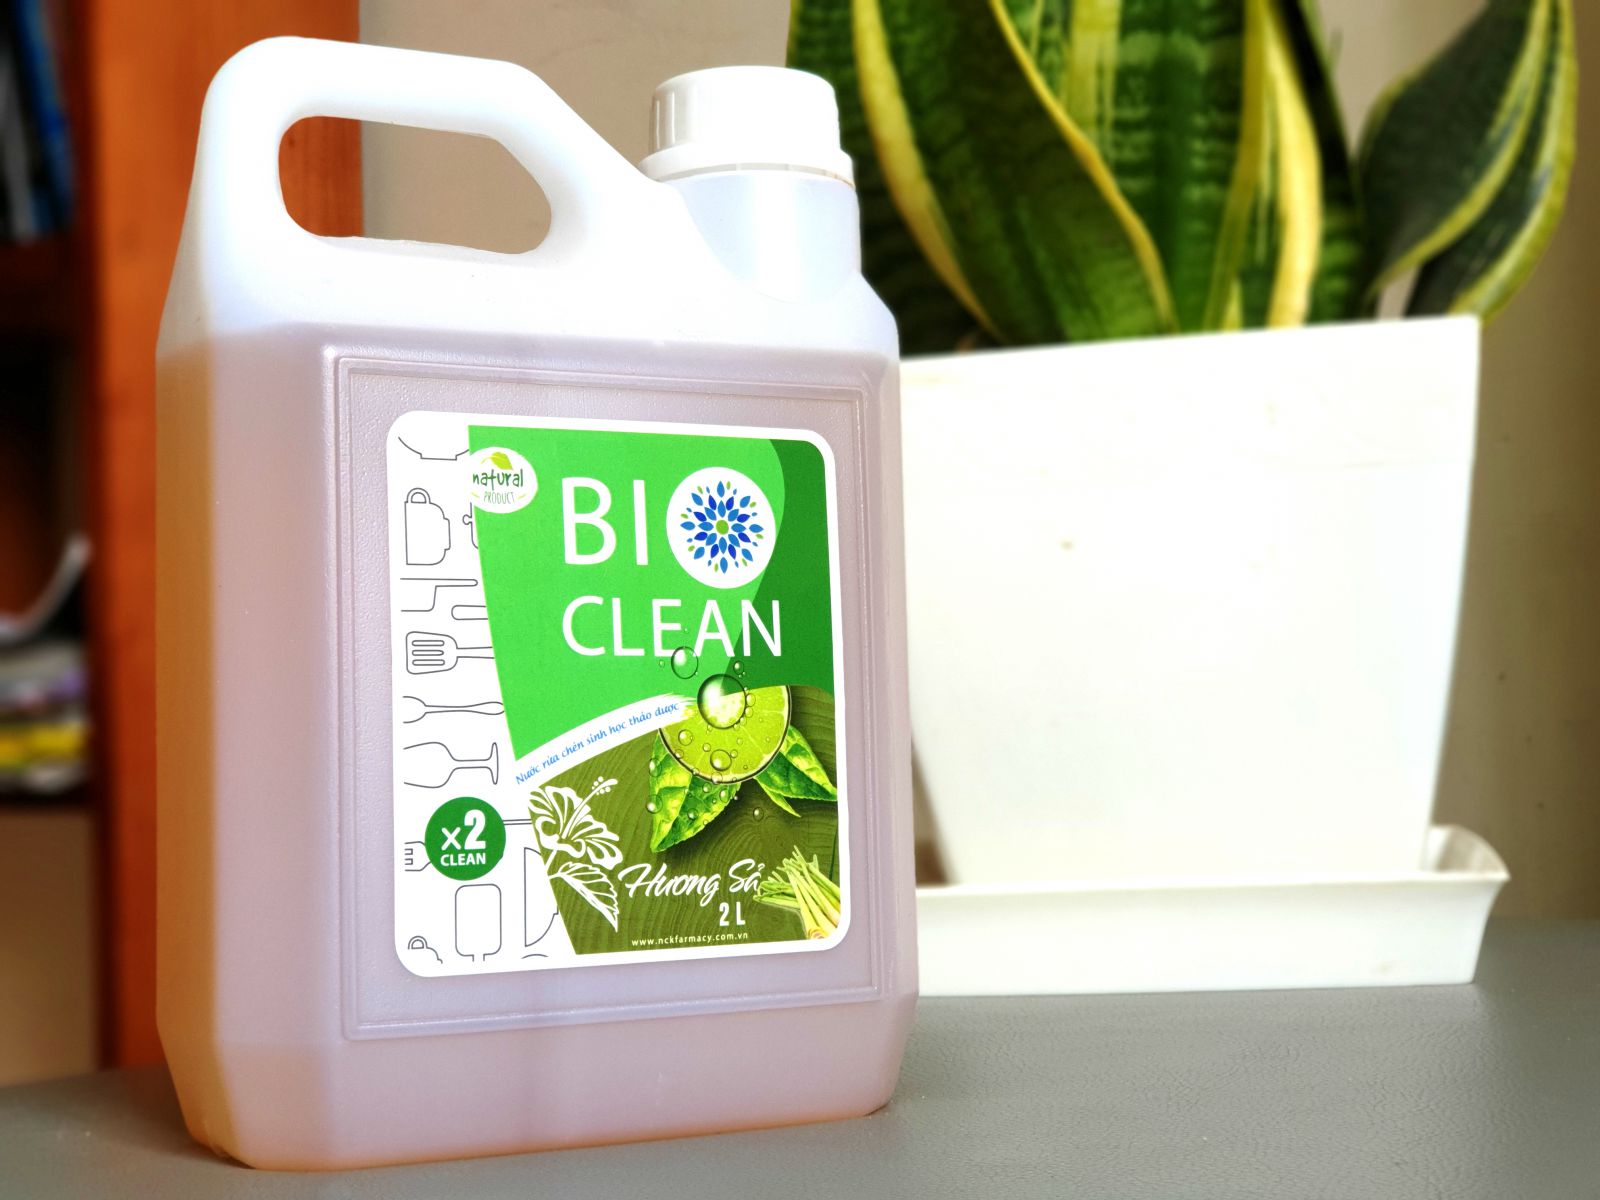 Nước rửa chén sinh học thảo dược BioClean X2, hương sả, can 2 lít